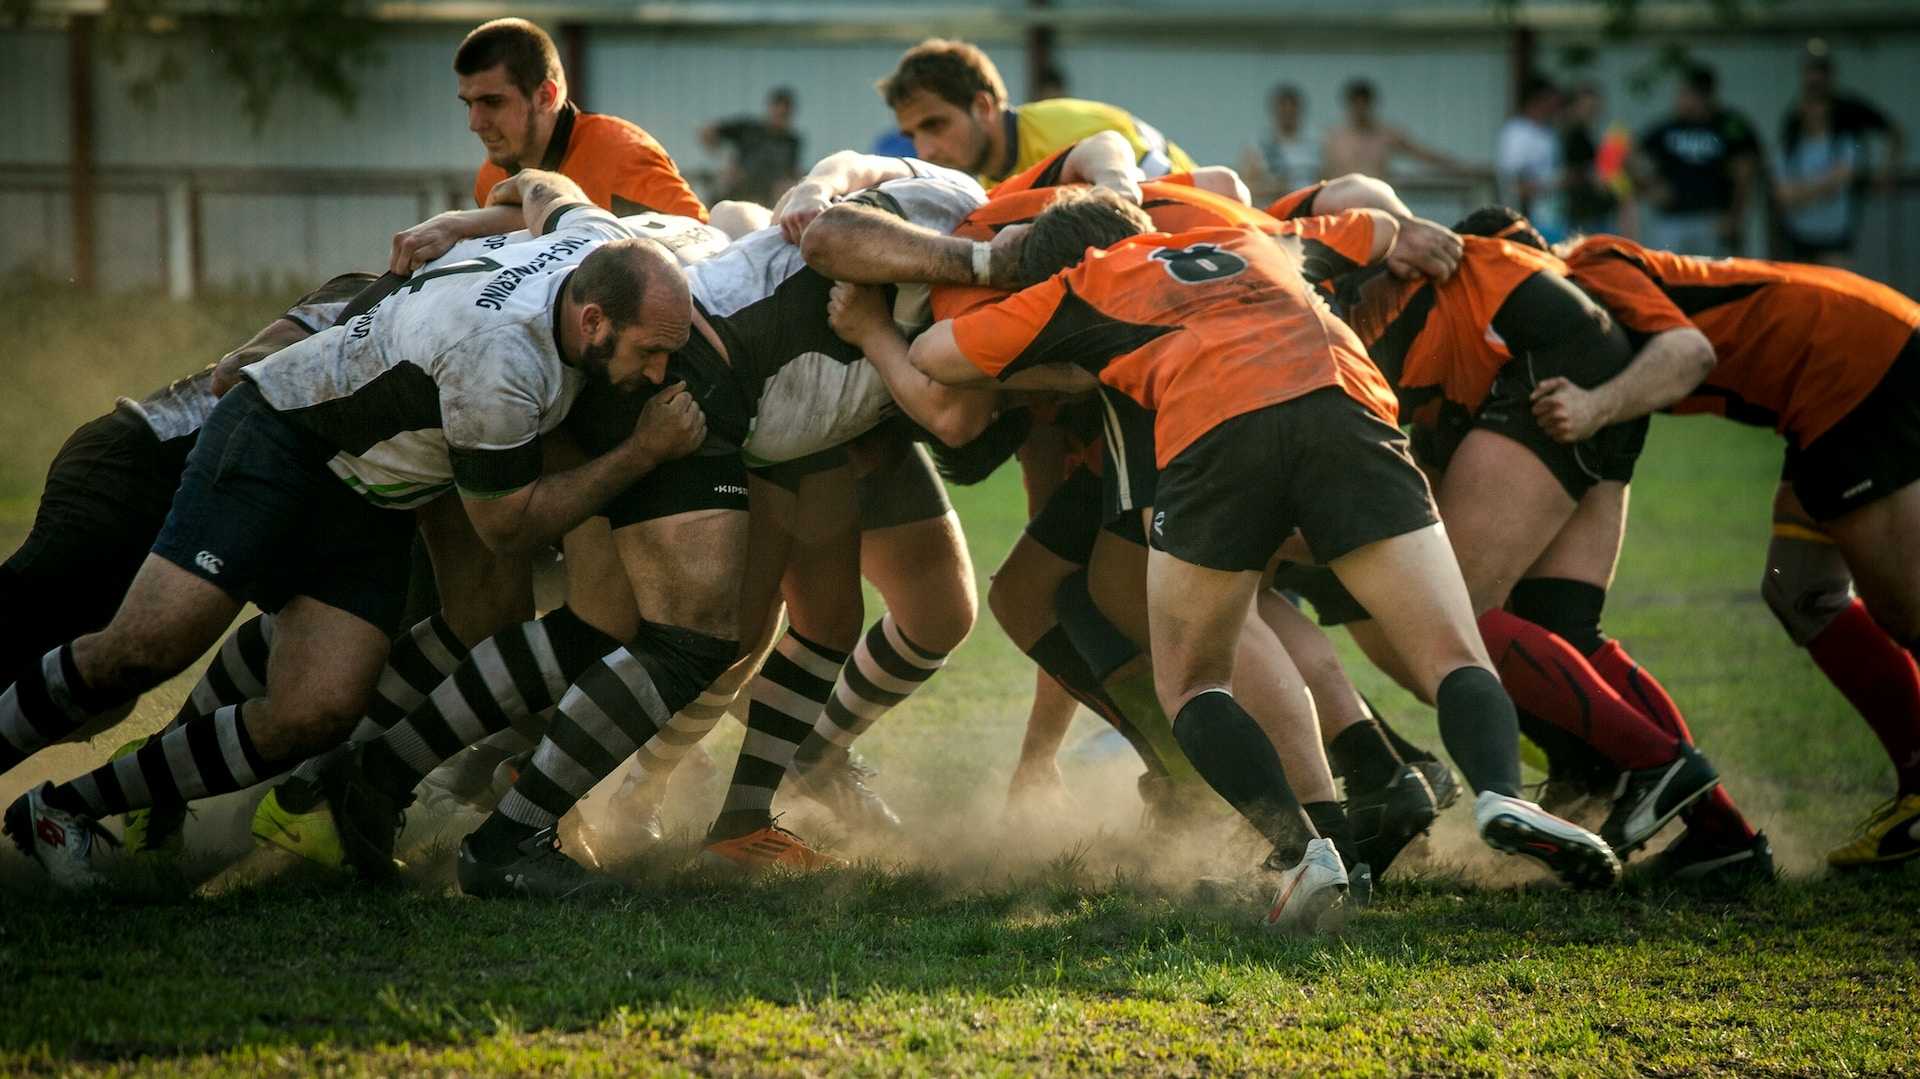 Rugby-Mannschaften im Gedränge